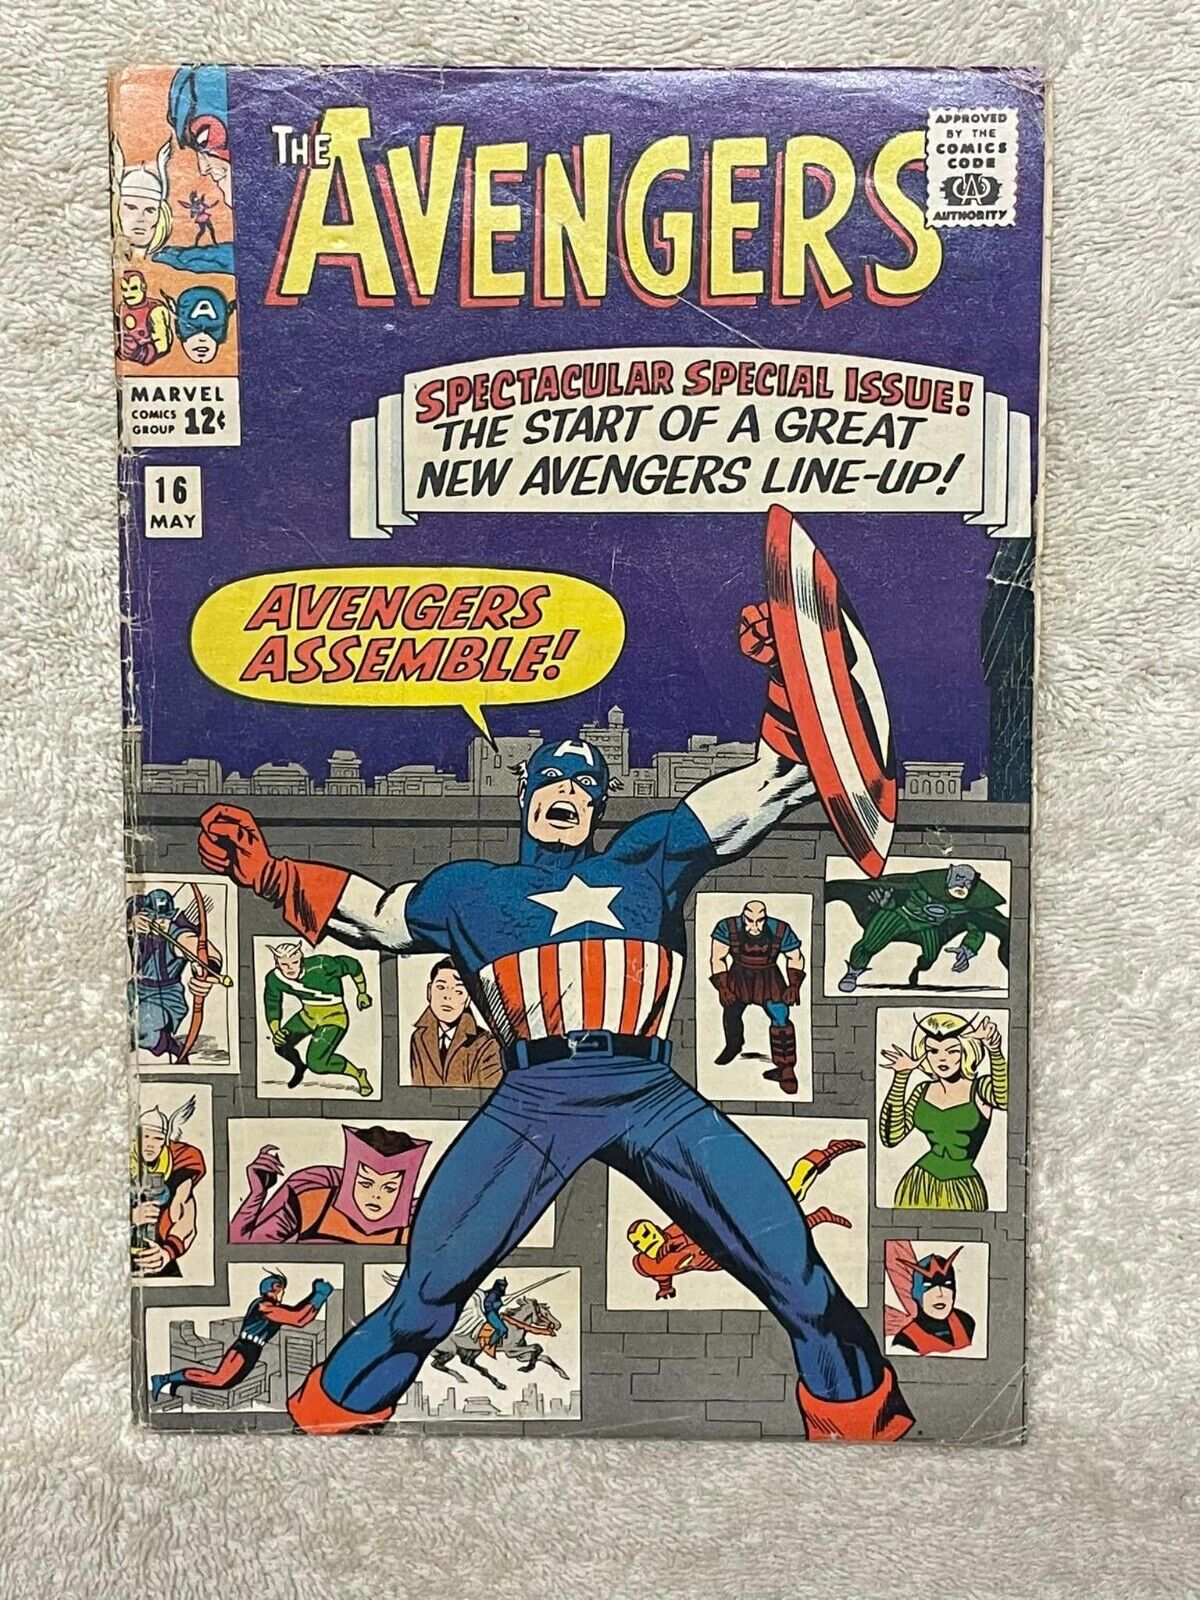 Avengers #16 (RAW 5.0 - MARVEL 1965)